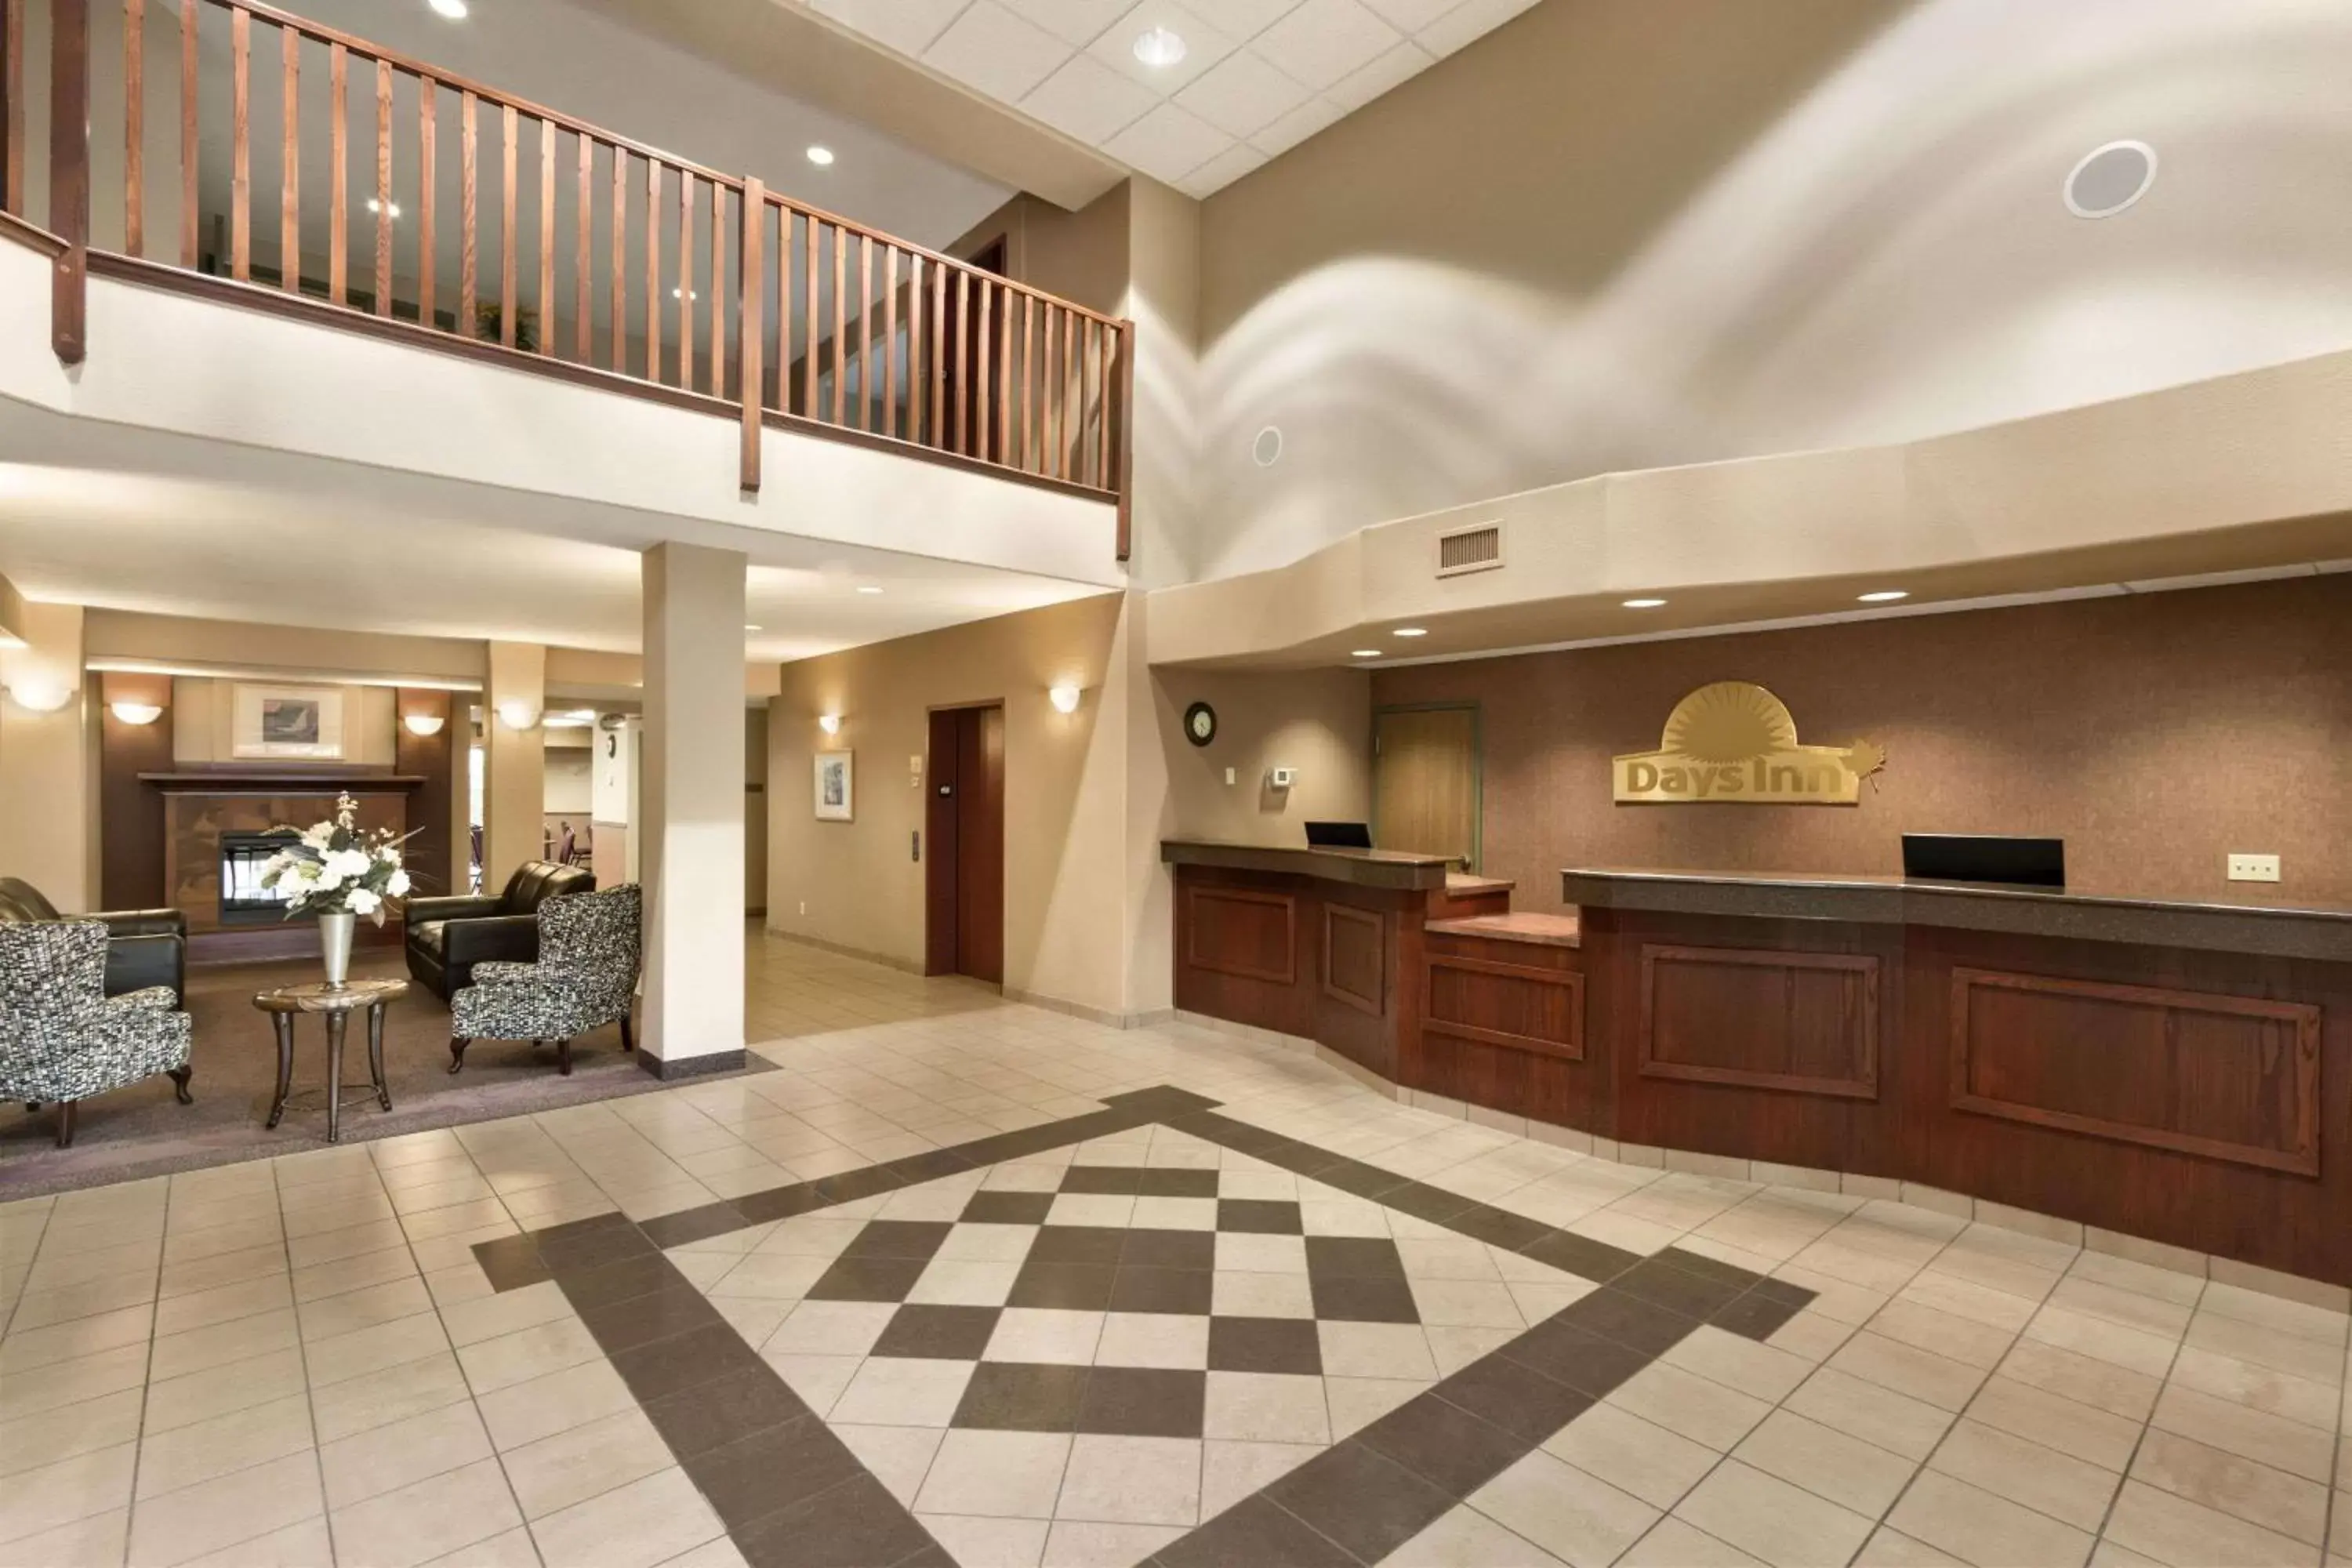 Lobby or reception, Lobby/Reception in Days Inn by Wyndham Thunder Bay North